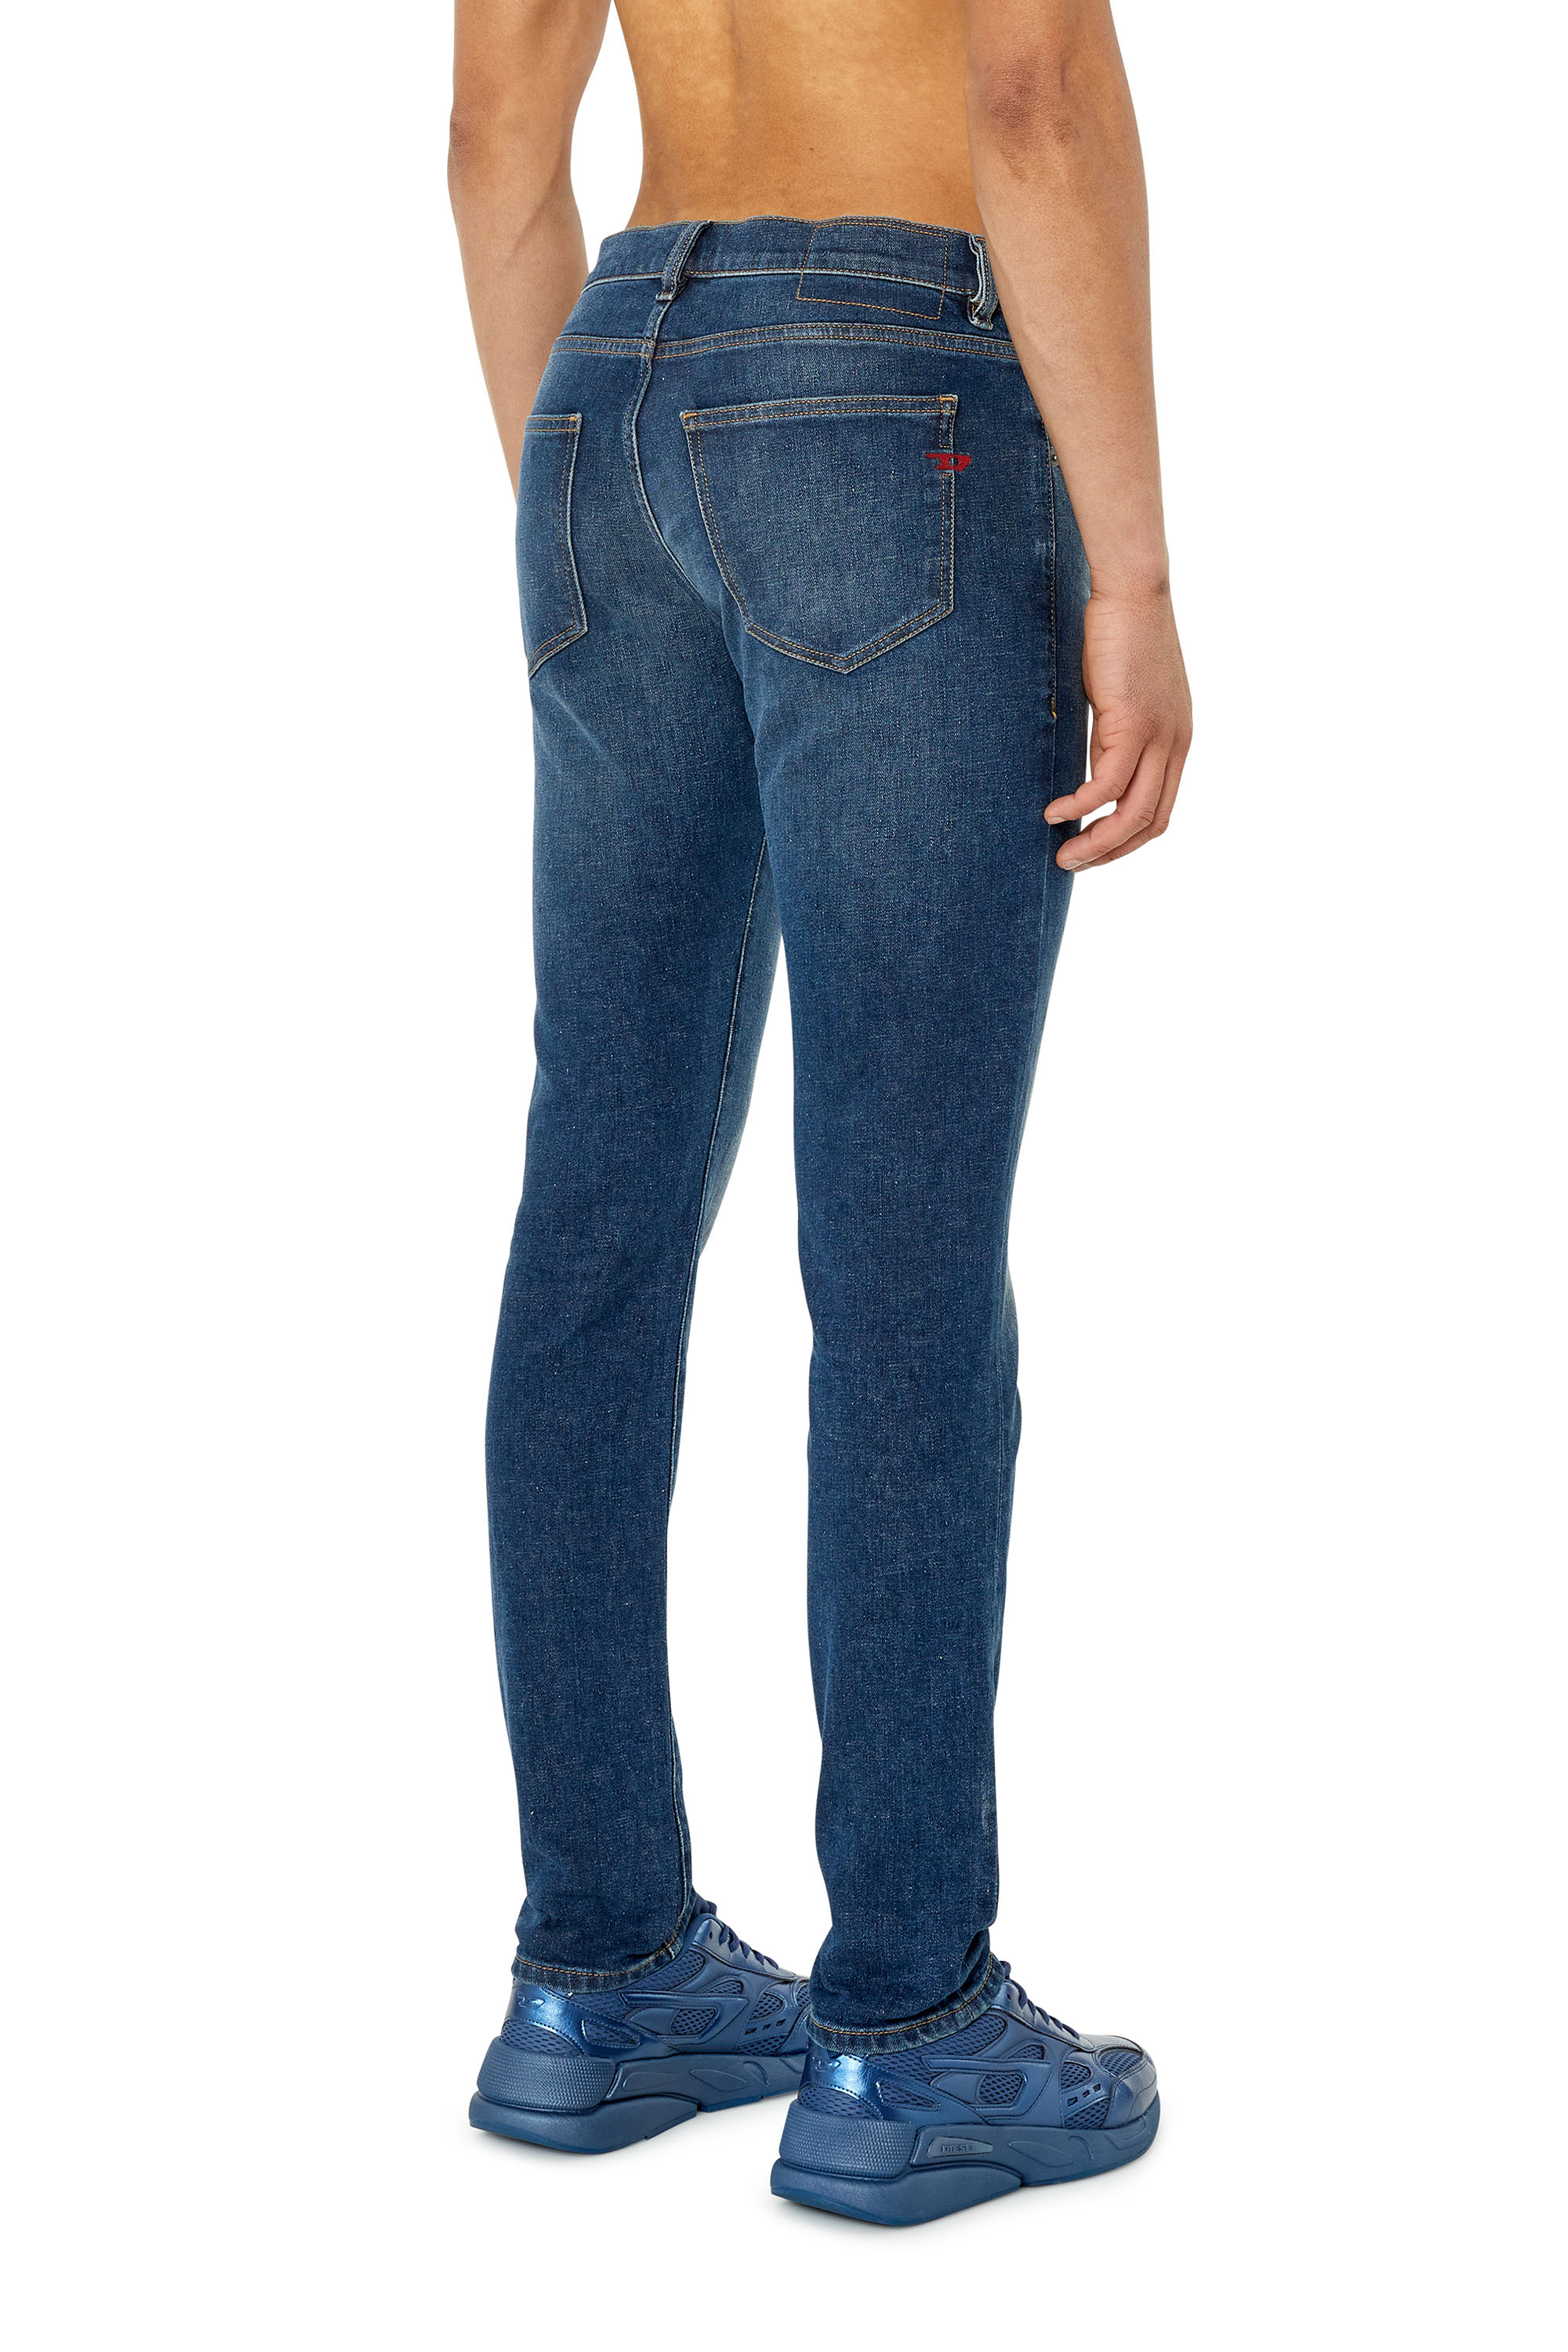 Diesel - Slim Jeans 2019 D-Strukt 09F39,  - Image 3